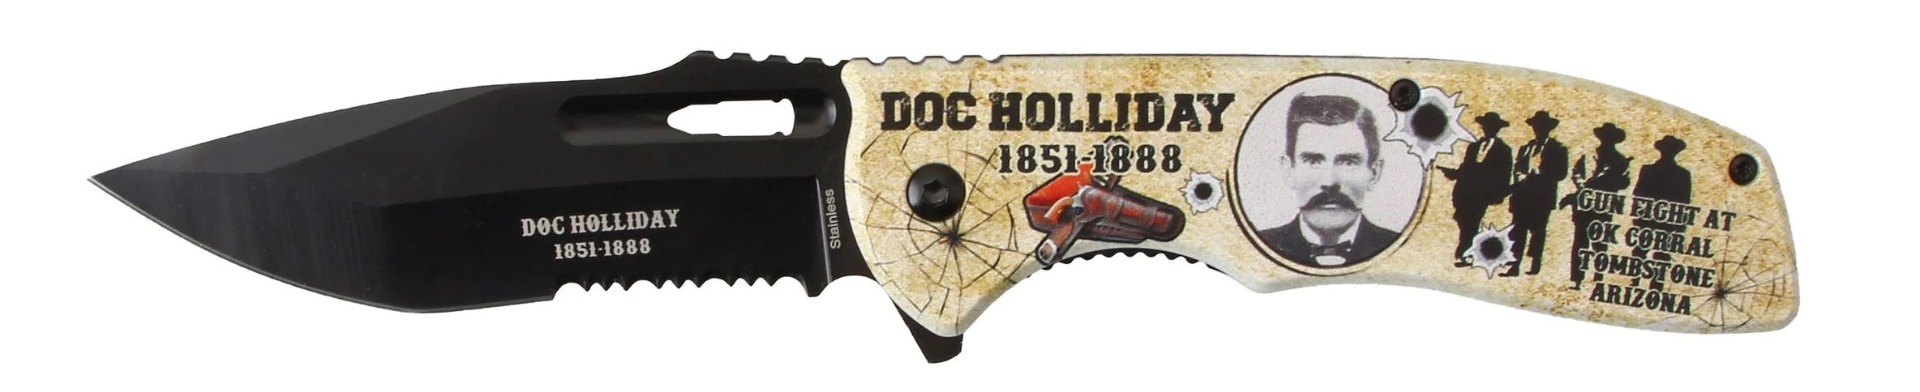 KNIFE - Doc Hollliday KN-1982DH